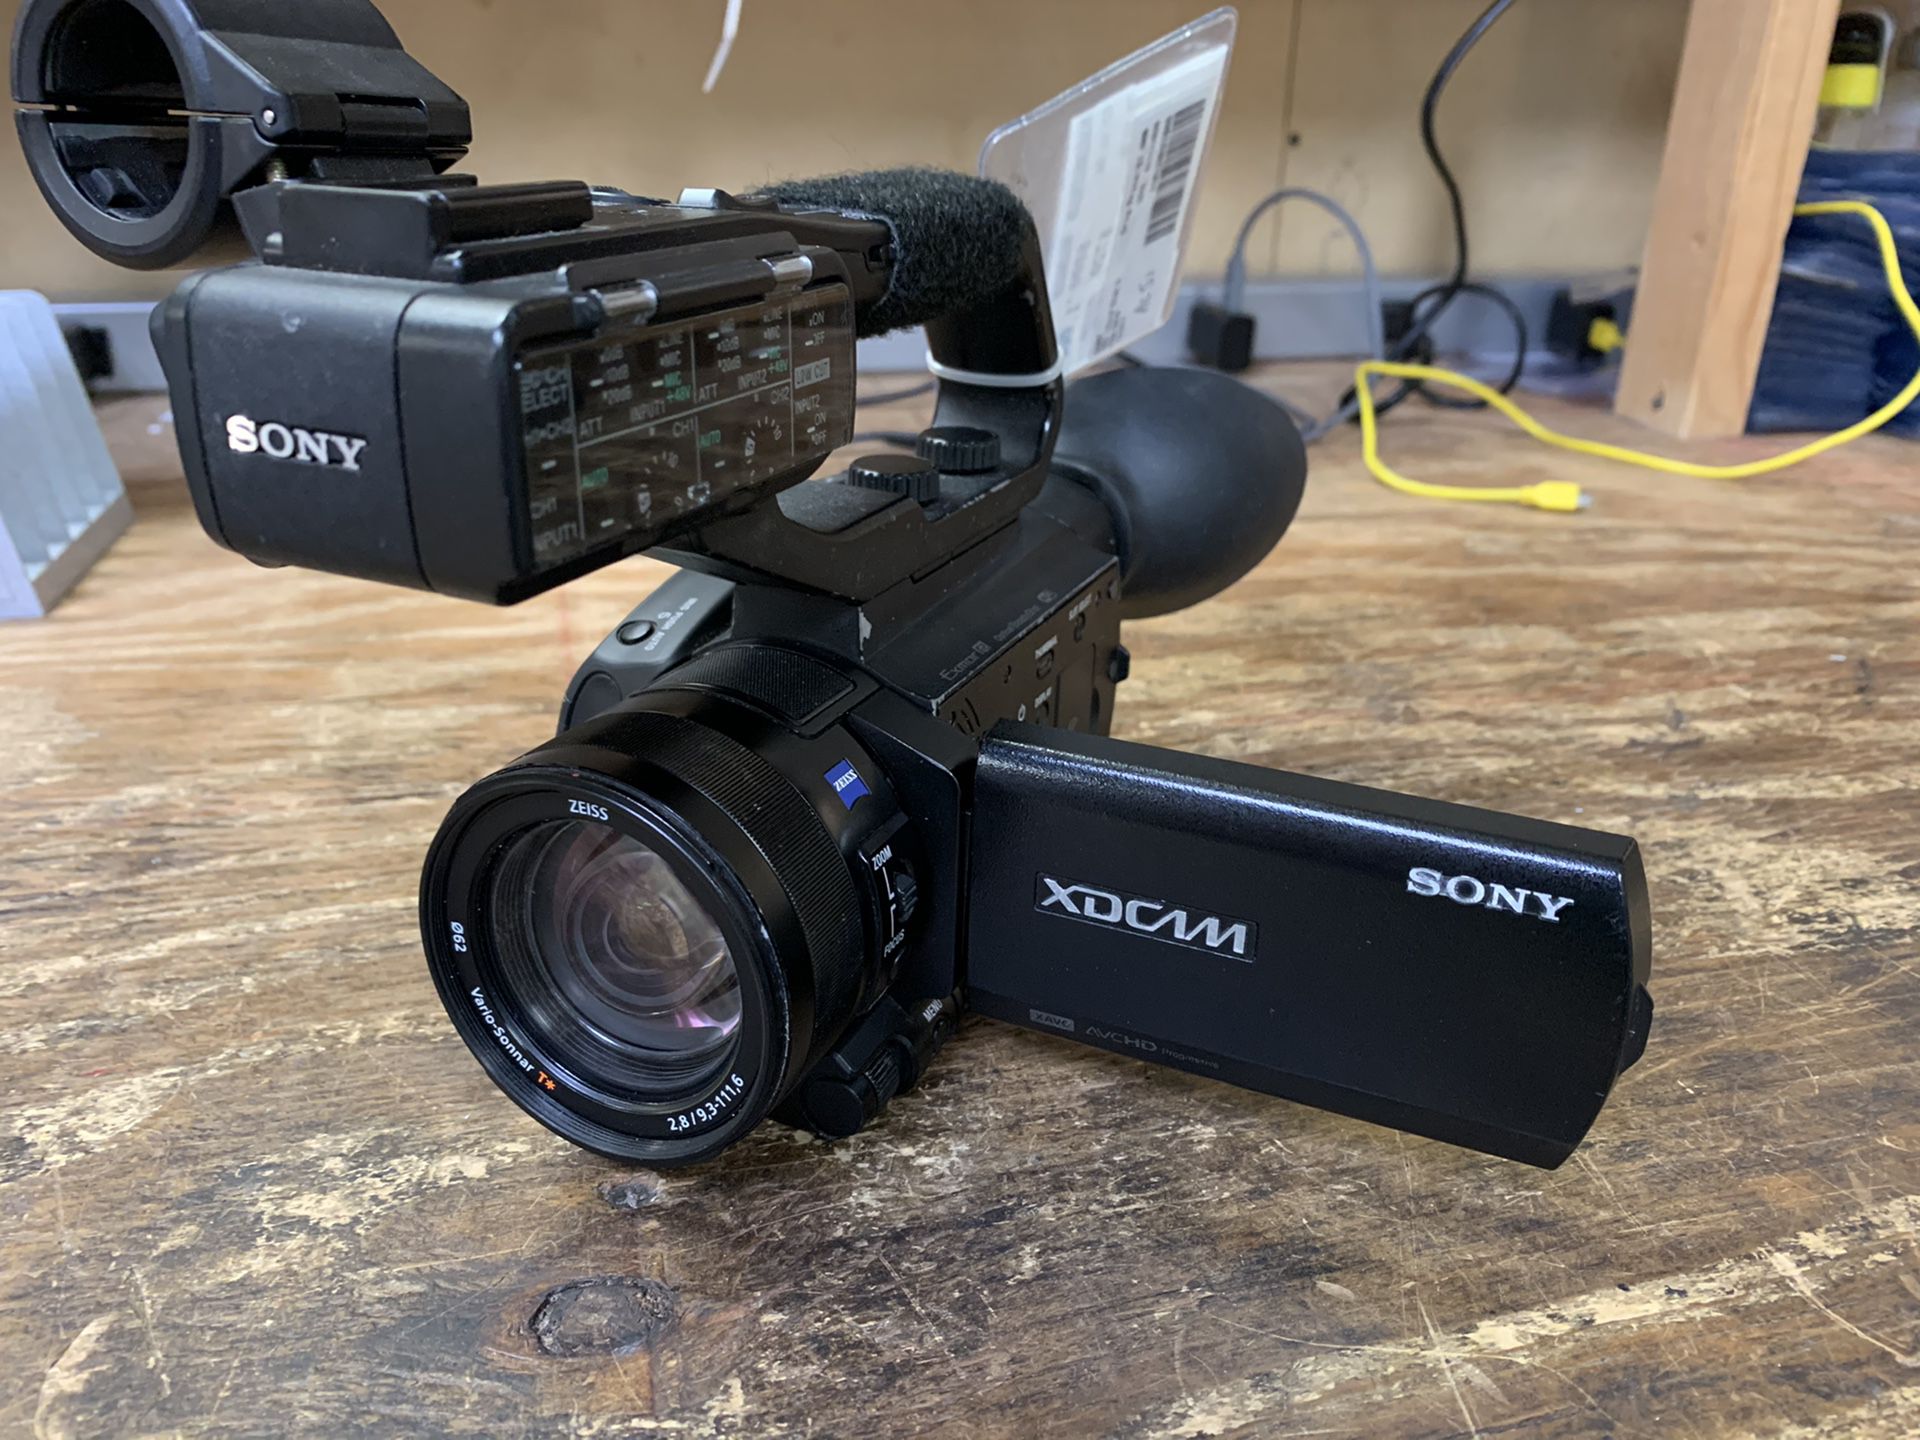 Sony XDCAM camcorder